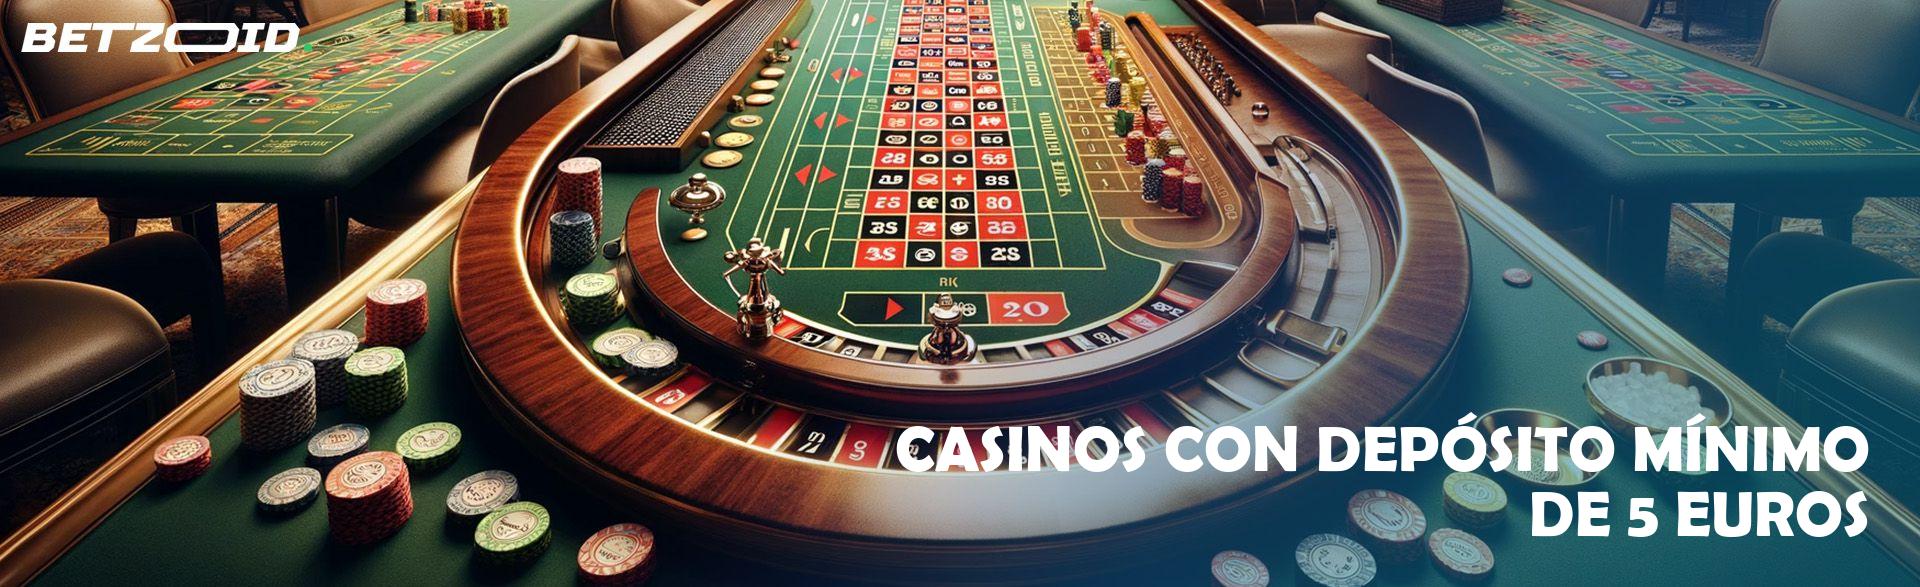 Casinos con Depósito Mínimo de 5 Euros.